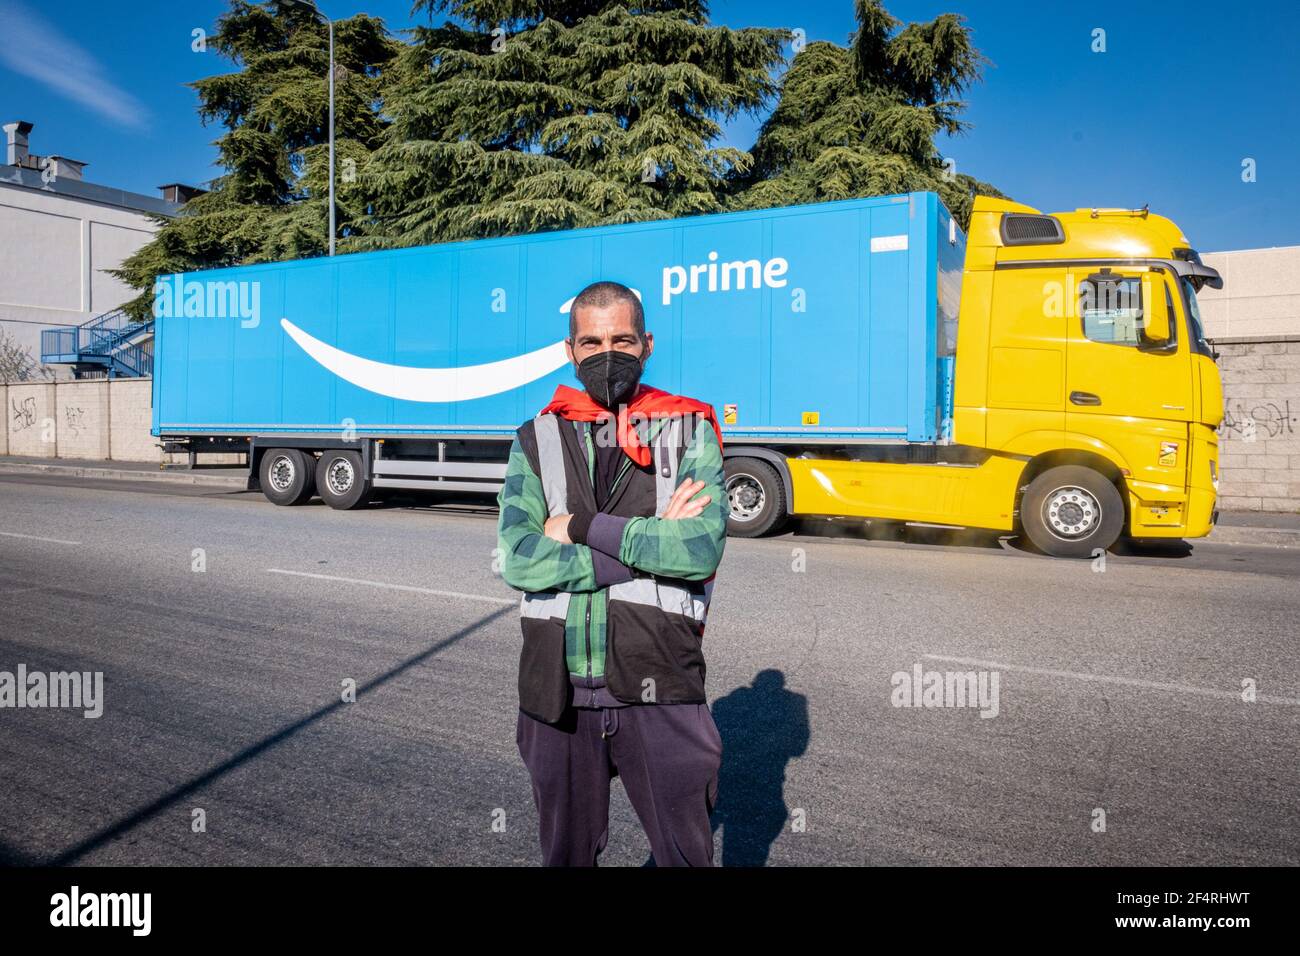 Milano, Italia. 22 marzo 2021. Milano - Amazon Logistics Workers sciopero.  Un conducente attraversa le braccia di fronte a un camion Amazon prime.  Sede Amazon via Toffetti solo per l'utilizzo Editoriale Credit: